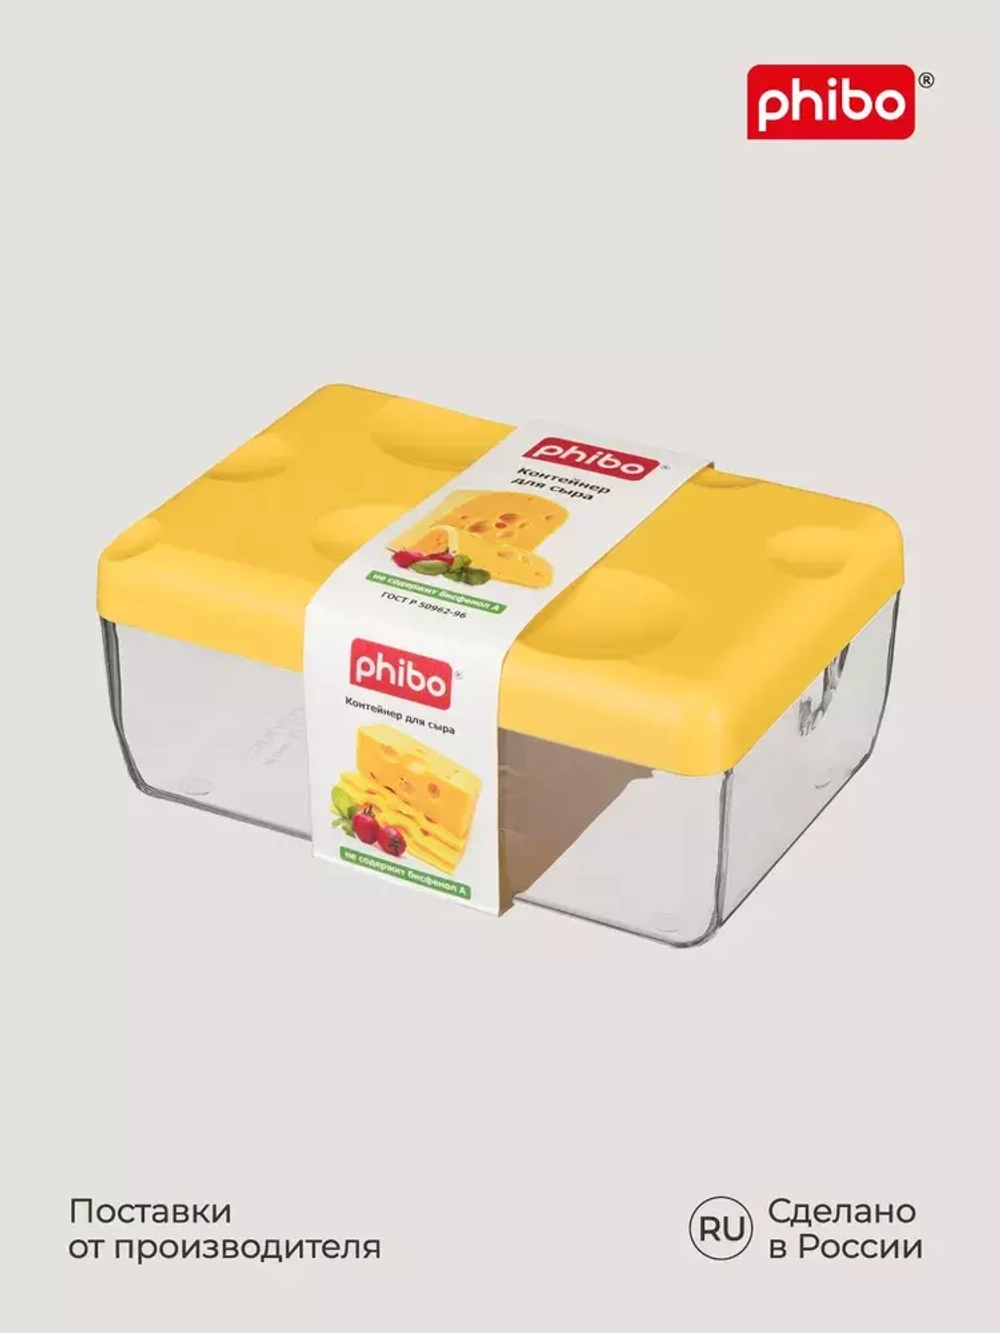 Контейнер для сыра желтый